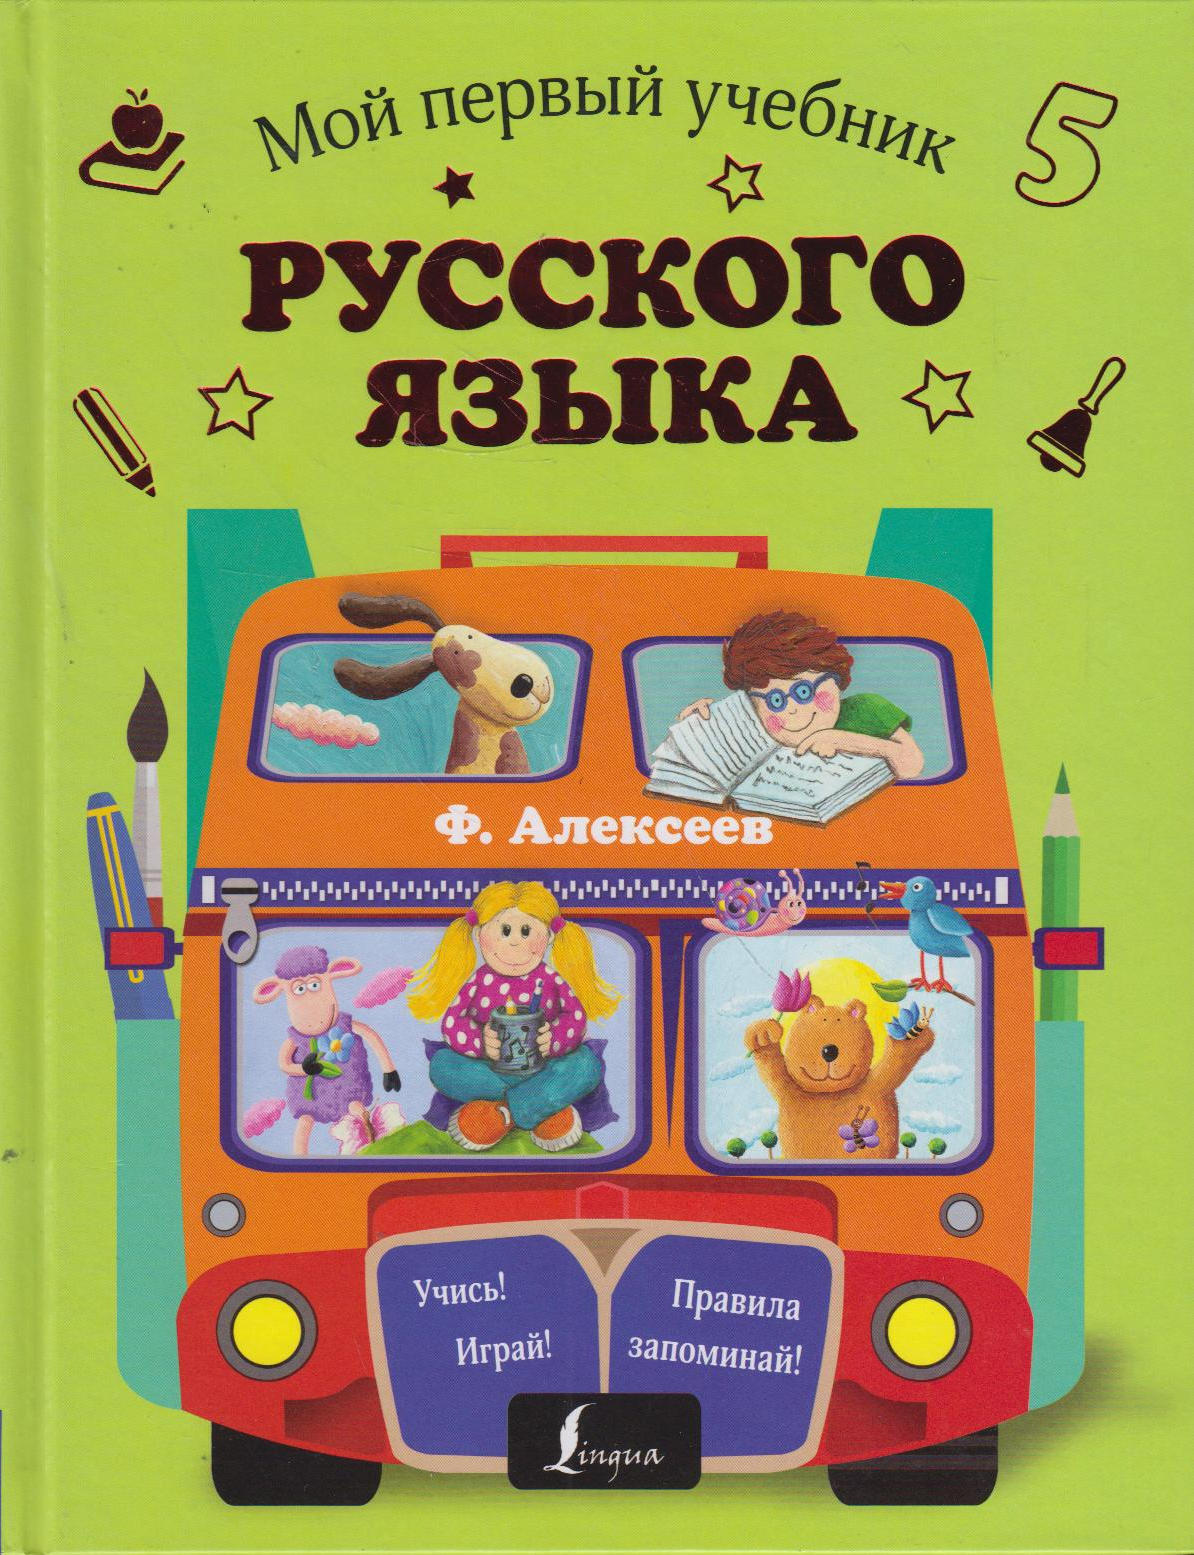 Первые учебники. Русский язык для дошкольников учебник. Моя первая книга 1 класс. Первые шаги учебник.